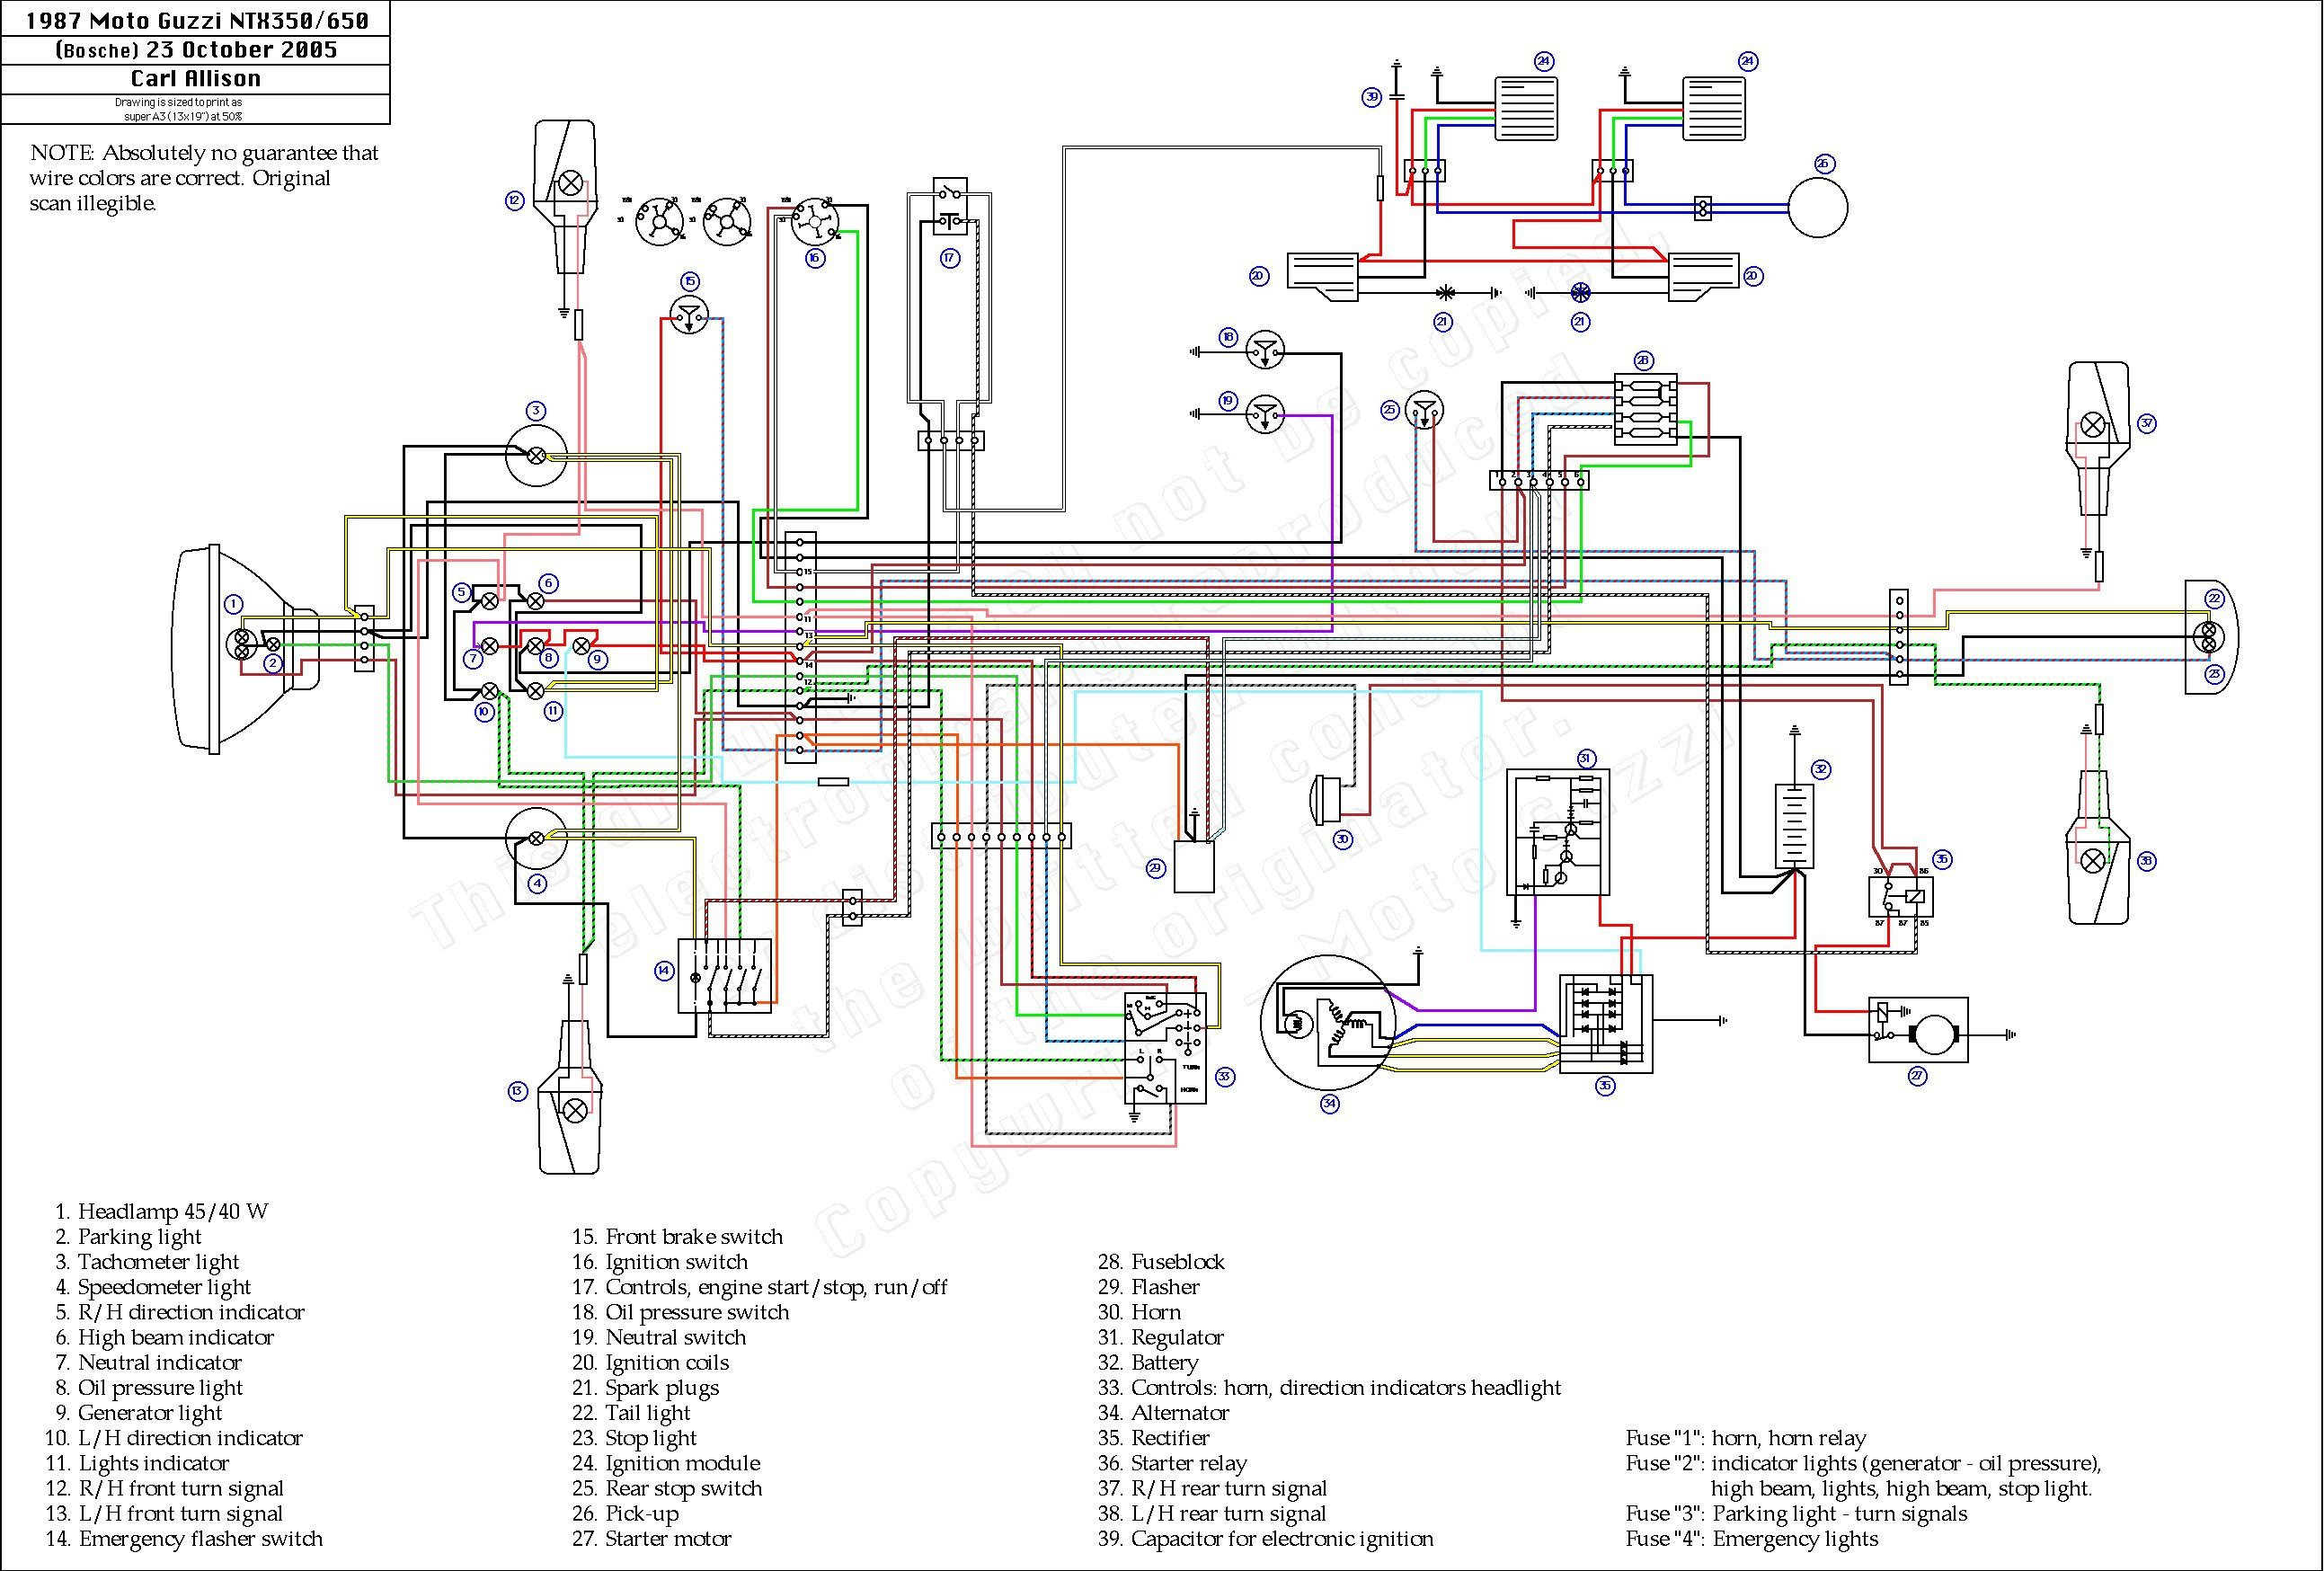 Lifan 200Cc Wiring Diagram | Wiring Diagram - Chinese Atv Wiring Diagram